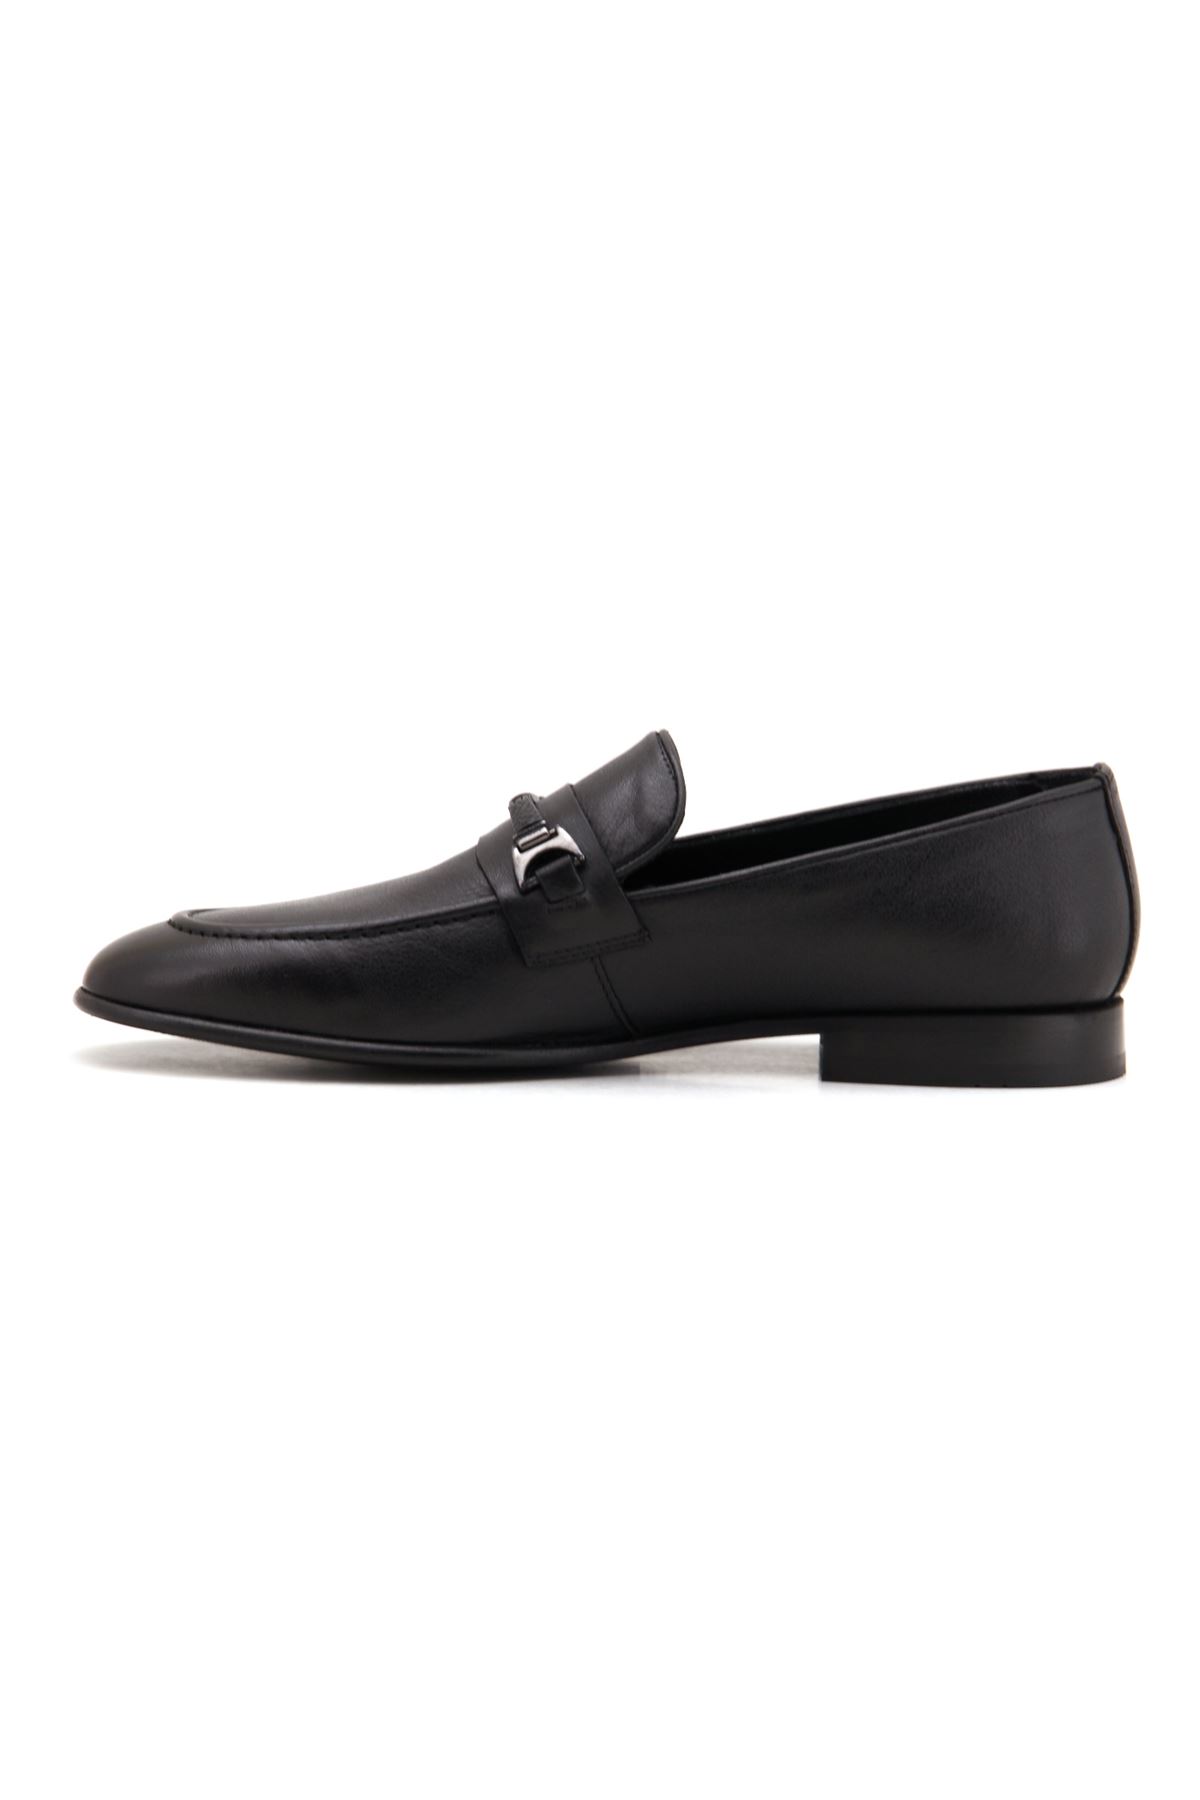 Marcomen 13059 Hakiki Deri Klasik Erkek Ayakkabı - Siyah